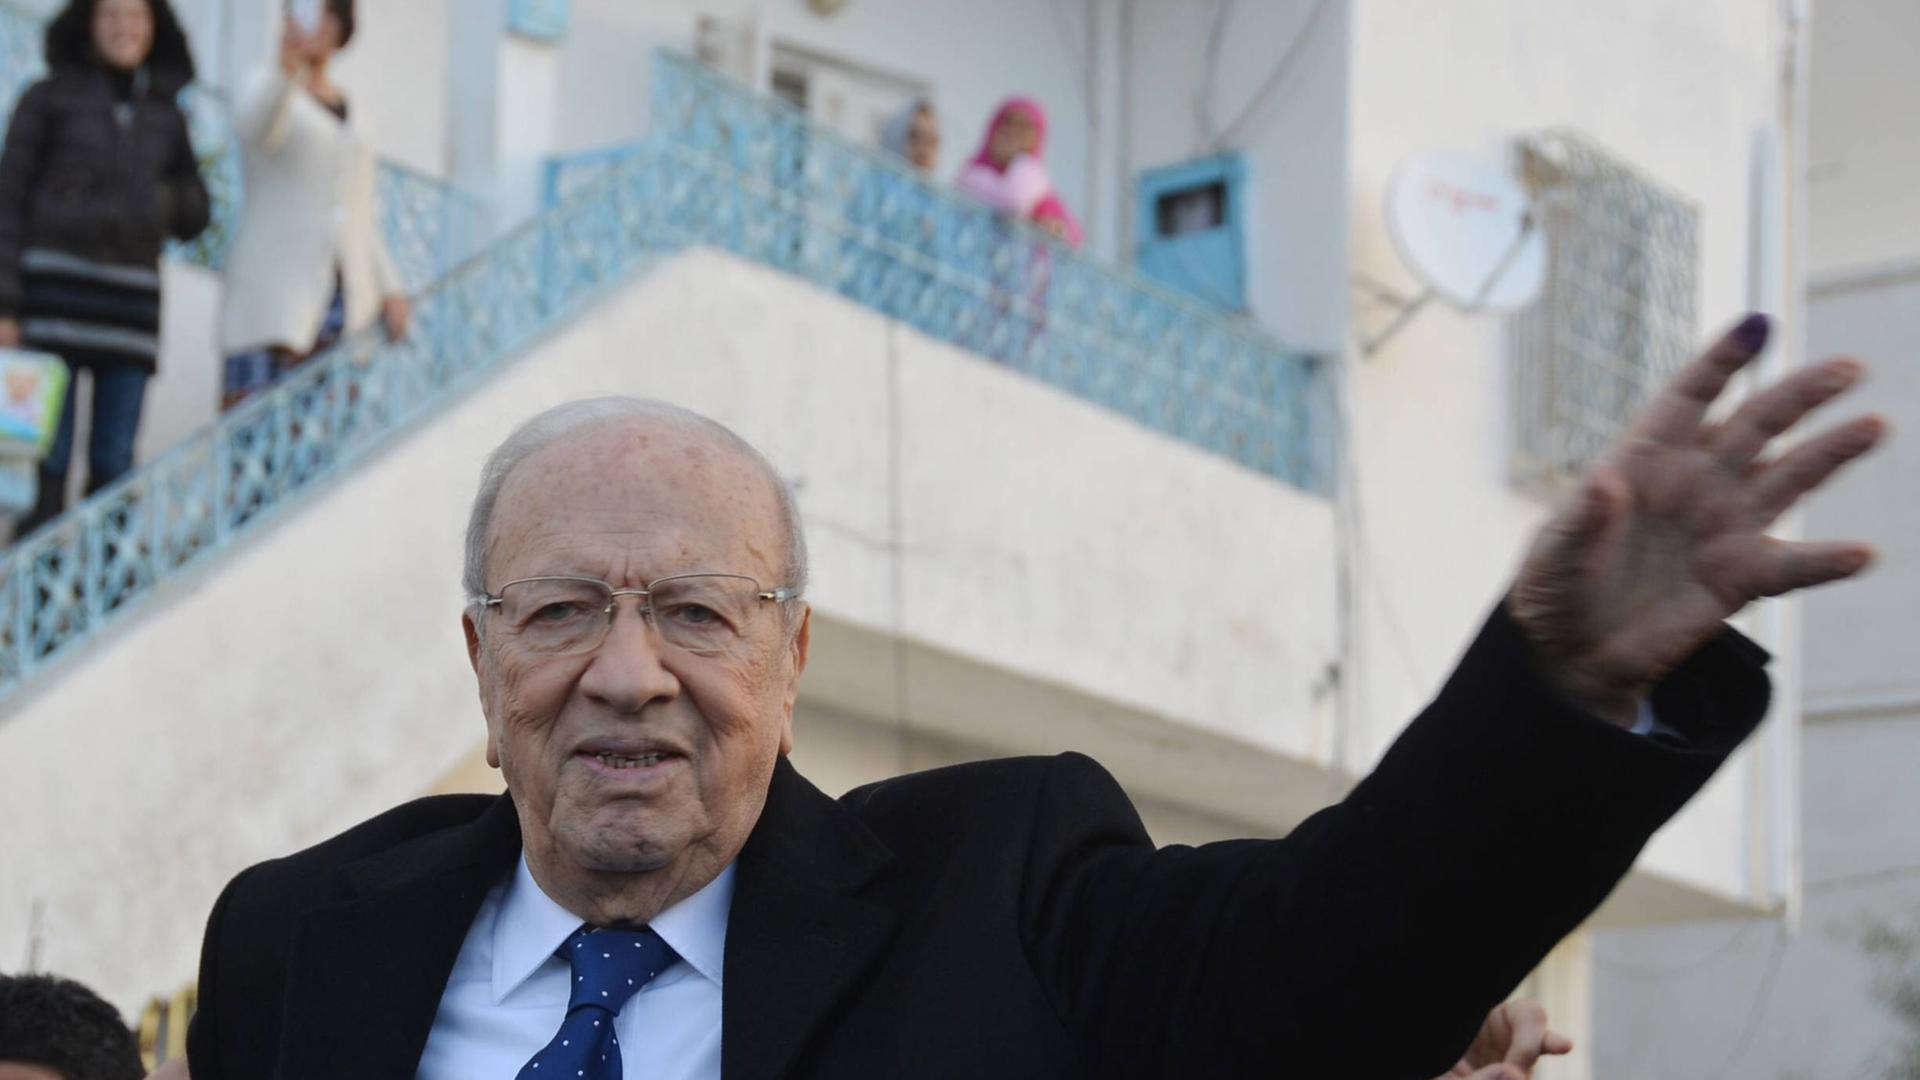 Der ehemalige Regierungschef Béji Caid Essebsi erklärt sich zum Sieger der Stichwahl um das tunesische Präsidentenamt.